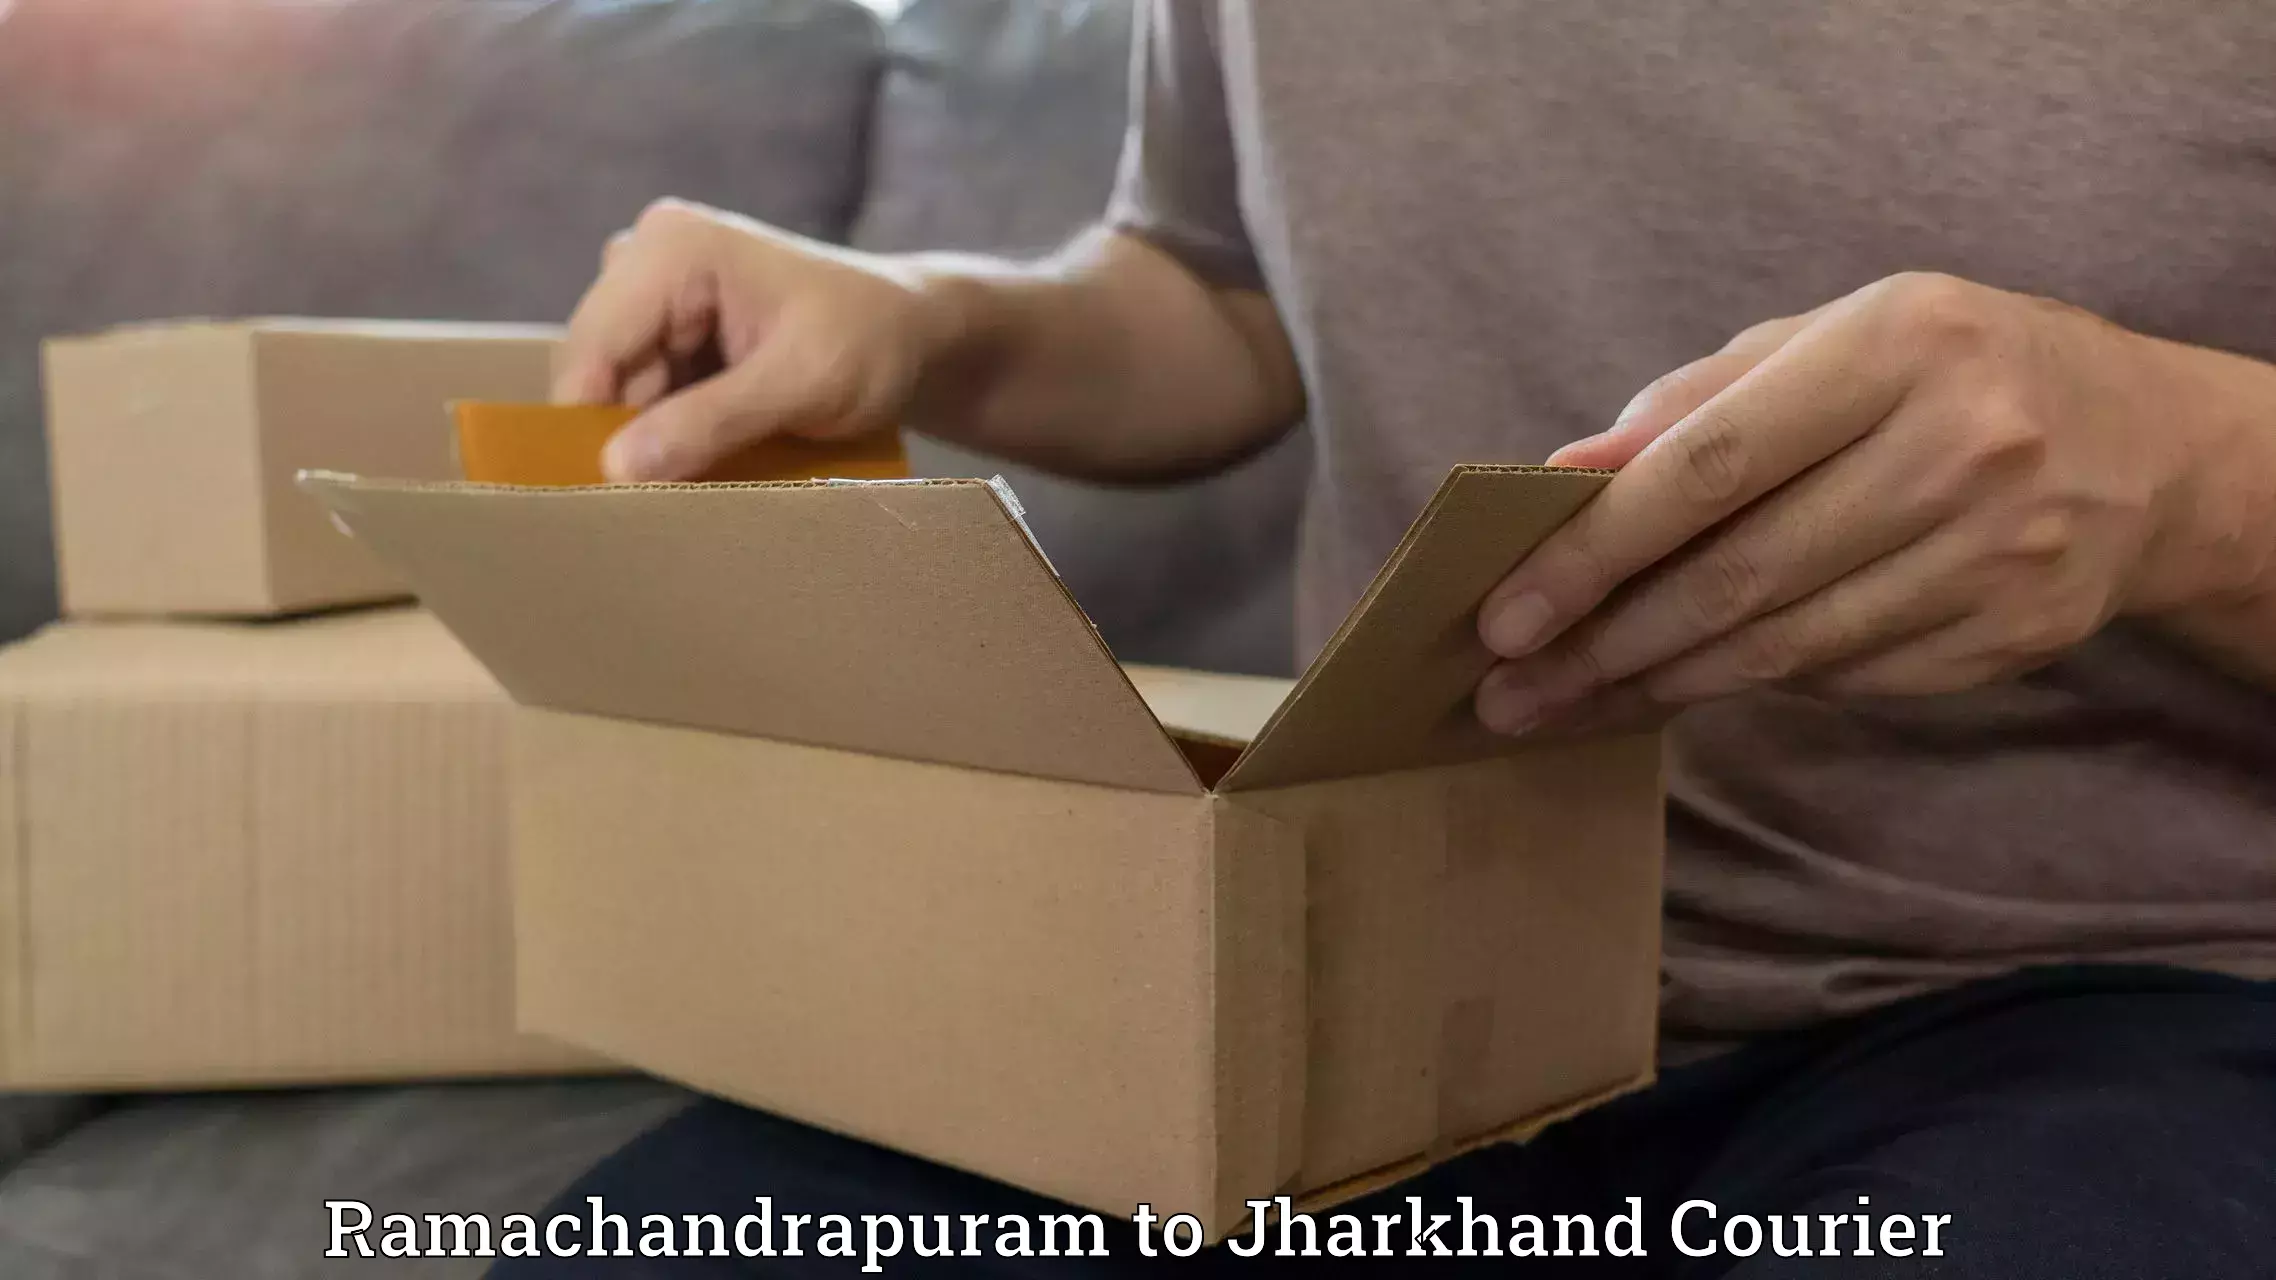 Custom courier packaging Ramachandrapuram to Dhanbad